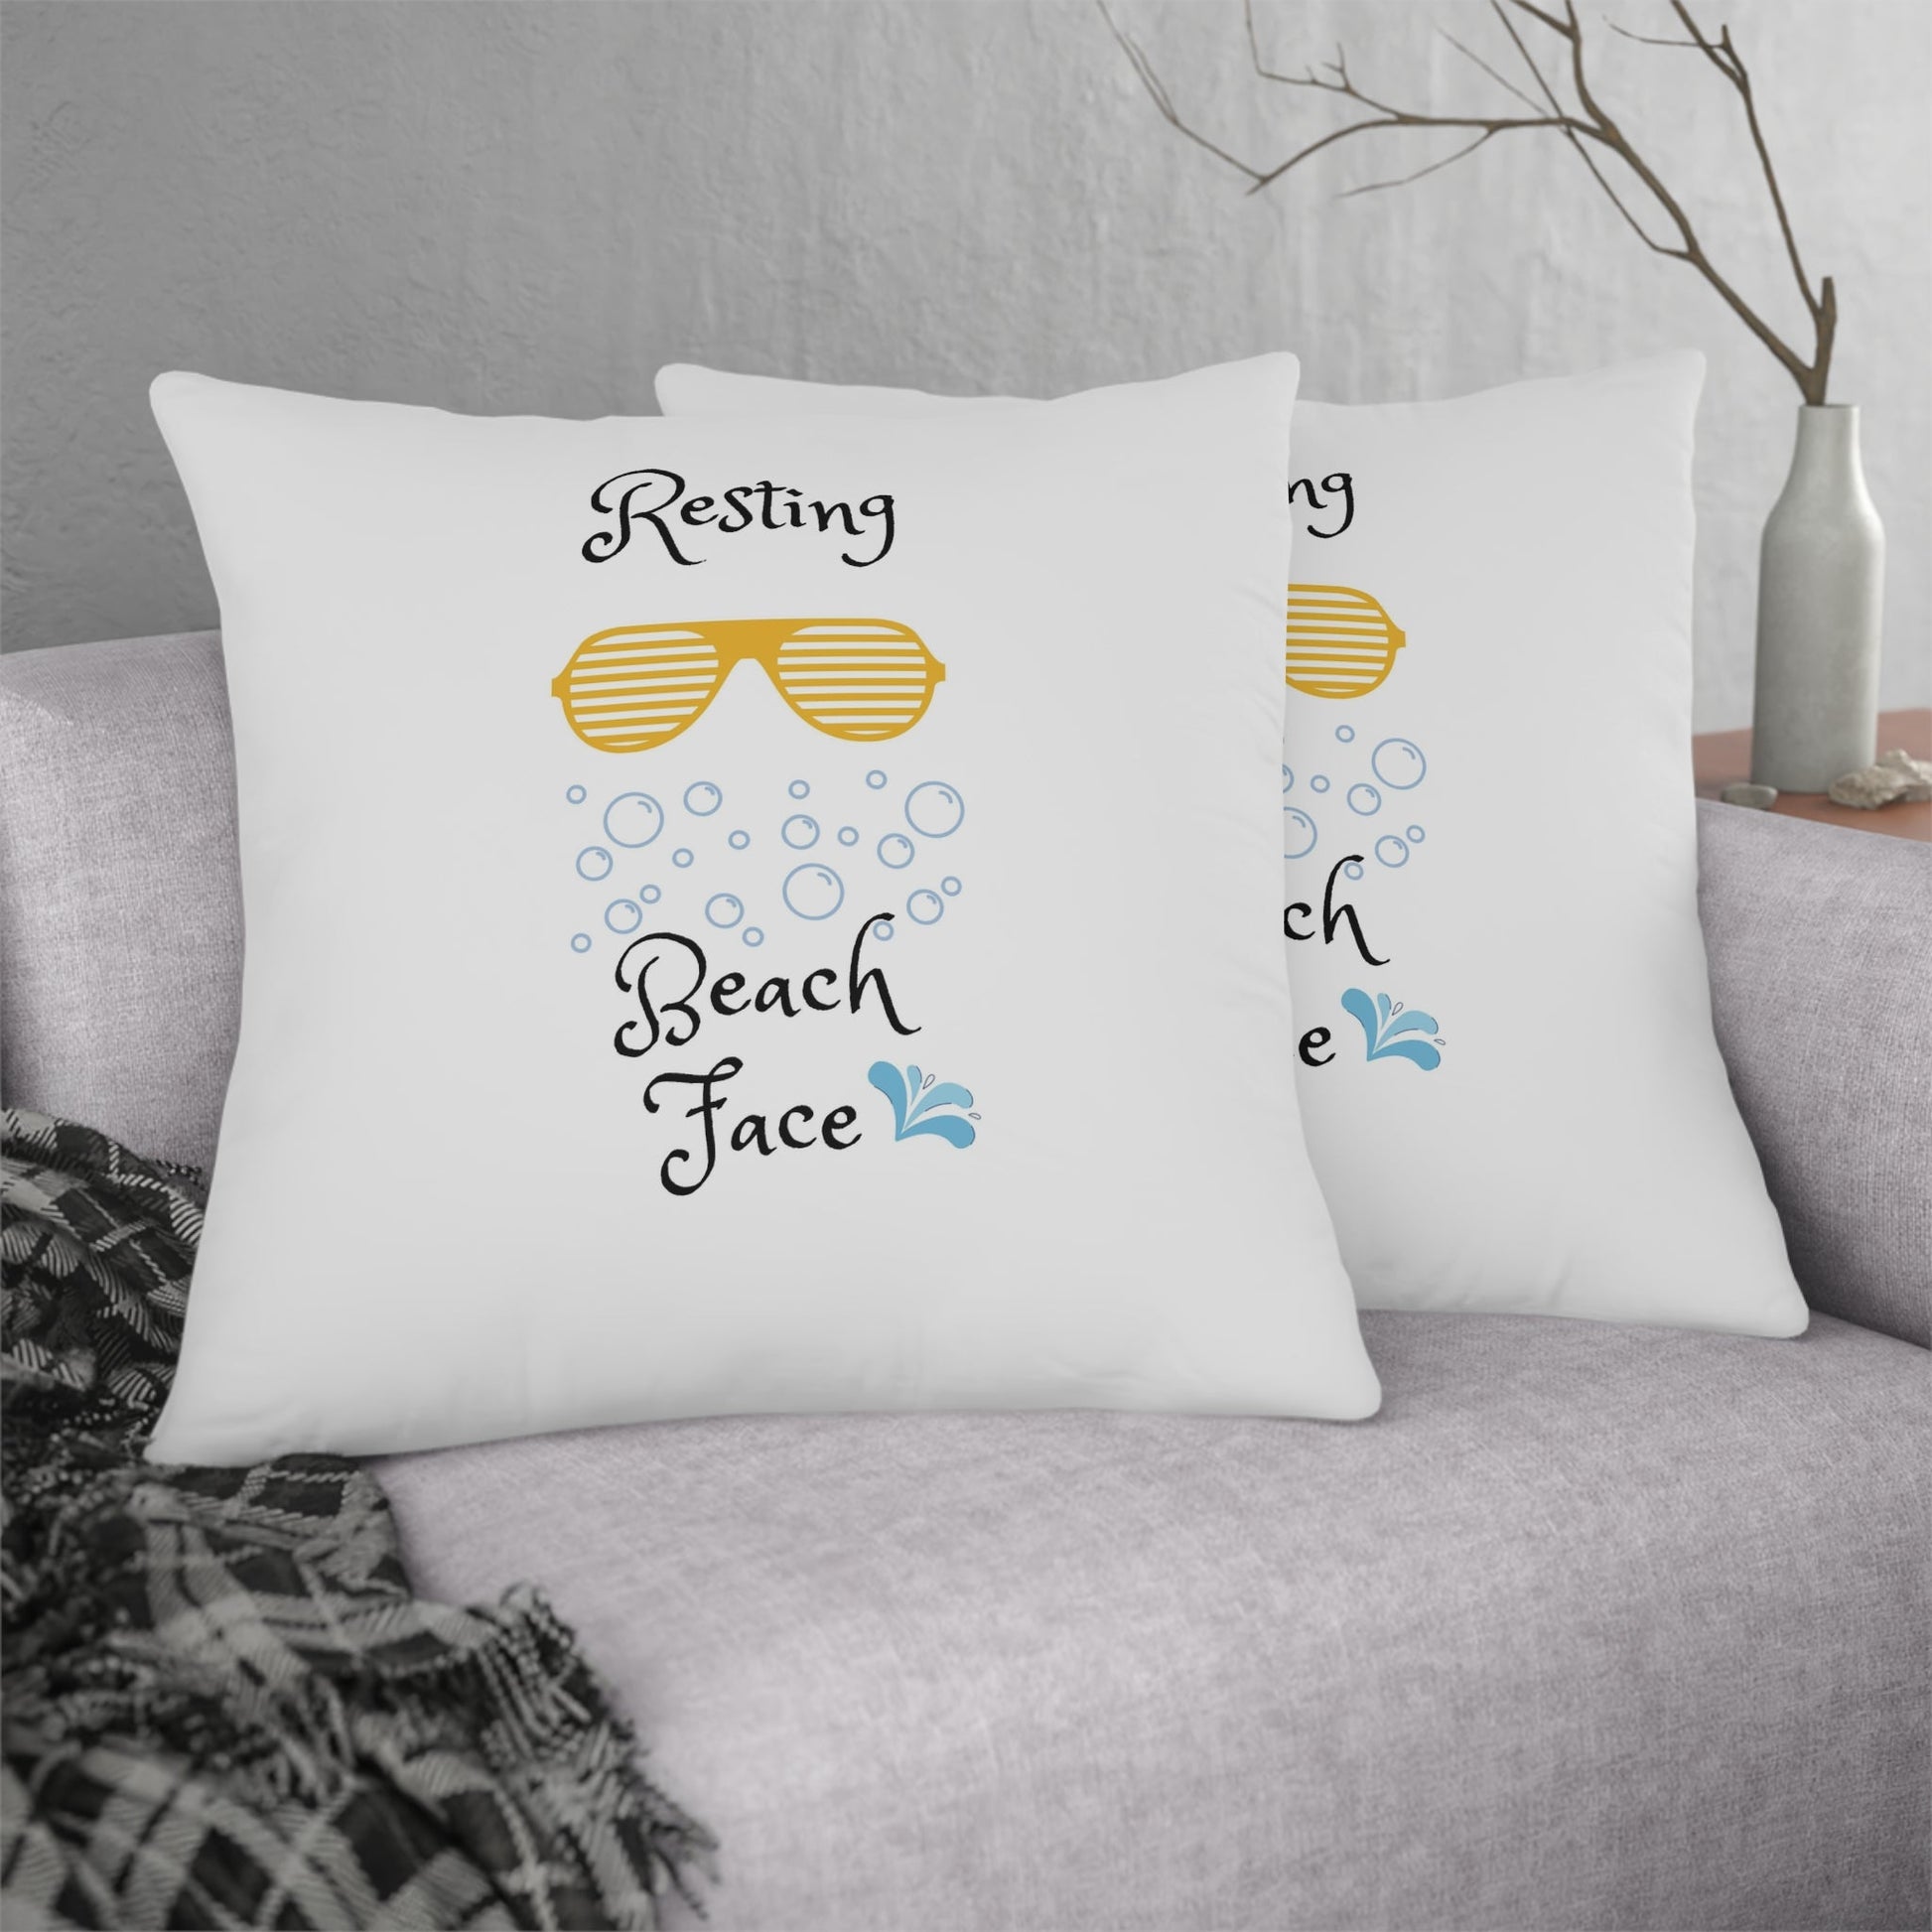 Home Decor - Resting Beach Face Waterproof Pillows